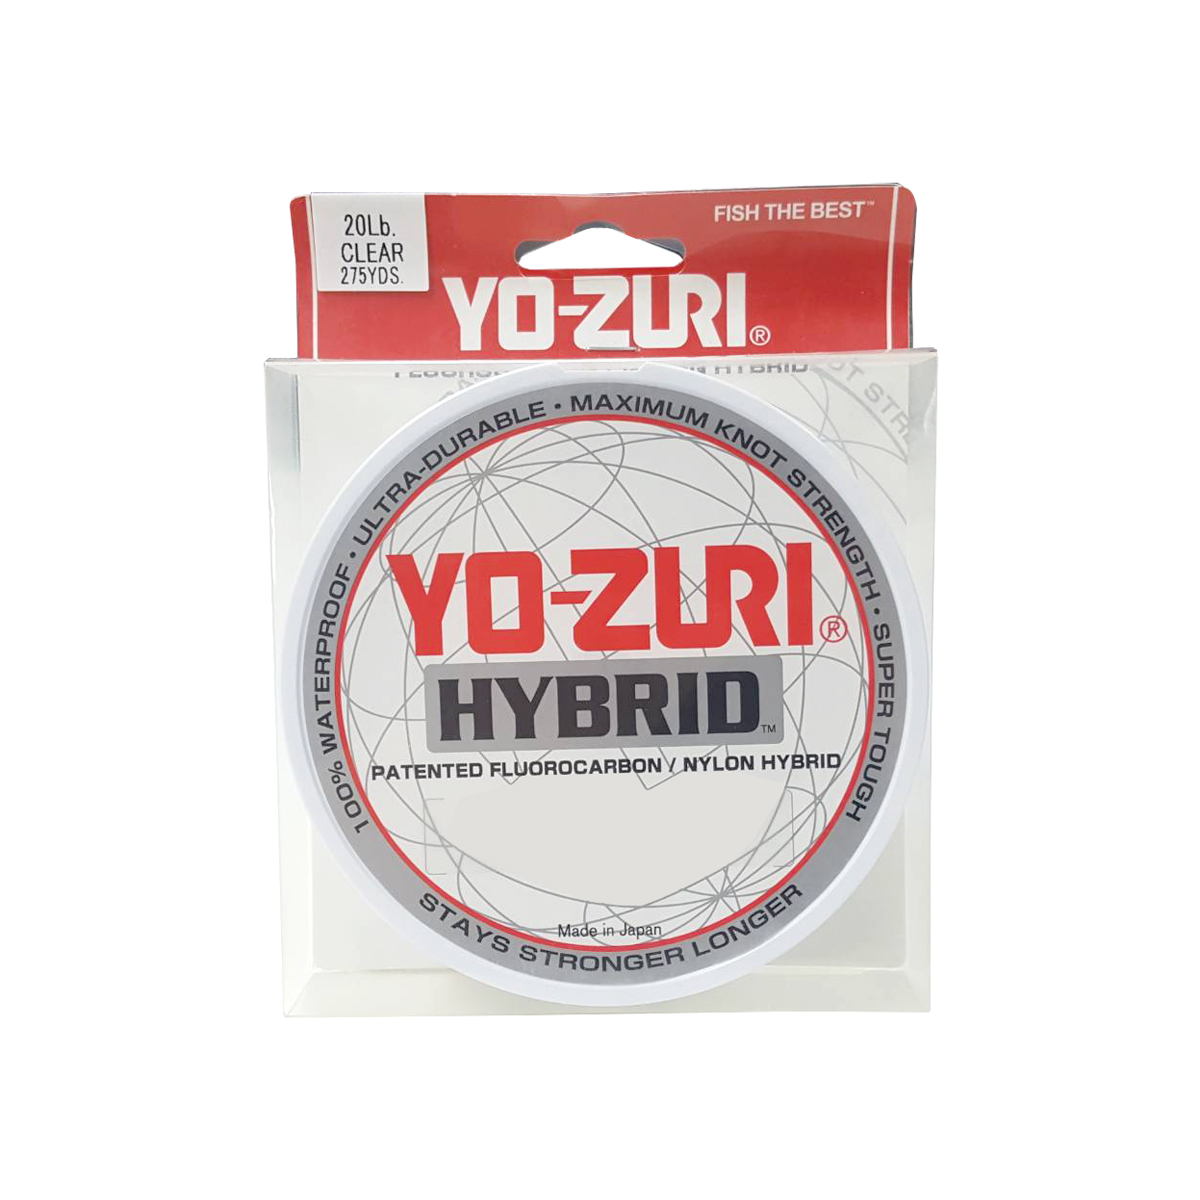 Yo-Zuri Hybrid 275Yd Clear #6lb*สายลีดฟลูออโรคาร์บอน - 7 SEAS